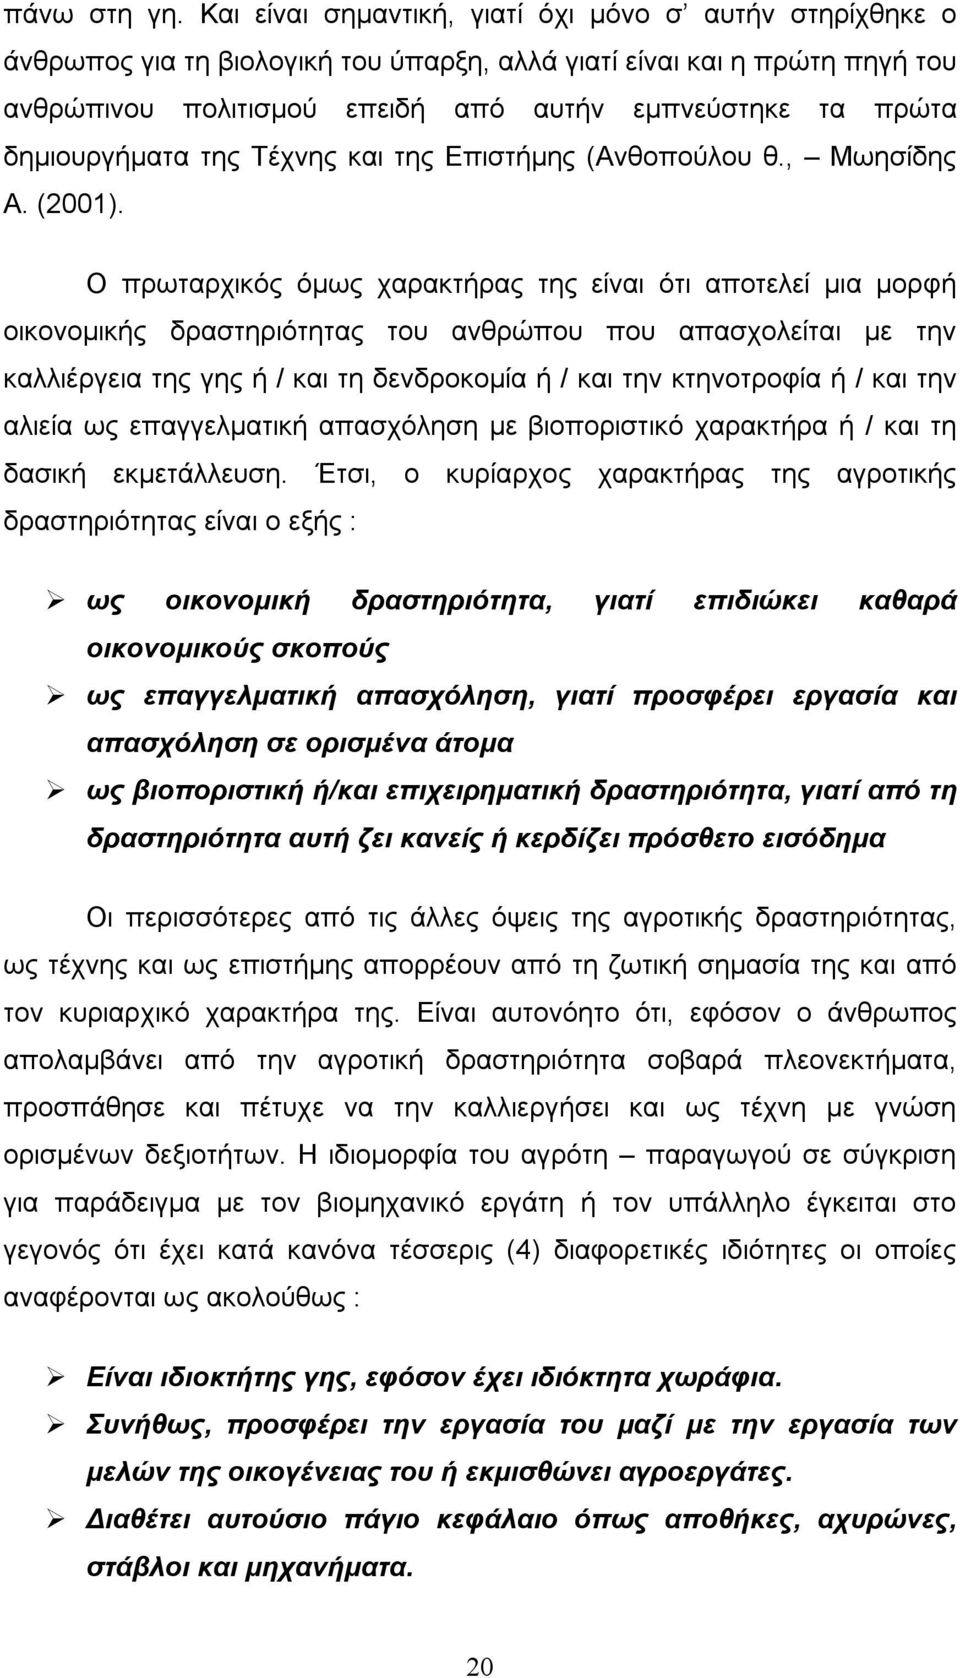 δημιουργήματα της Τέχνης και της Επιστήμης (Ανθοπούλου θ., Μωησίδης Α. (2001).